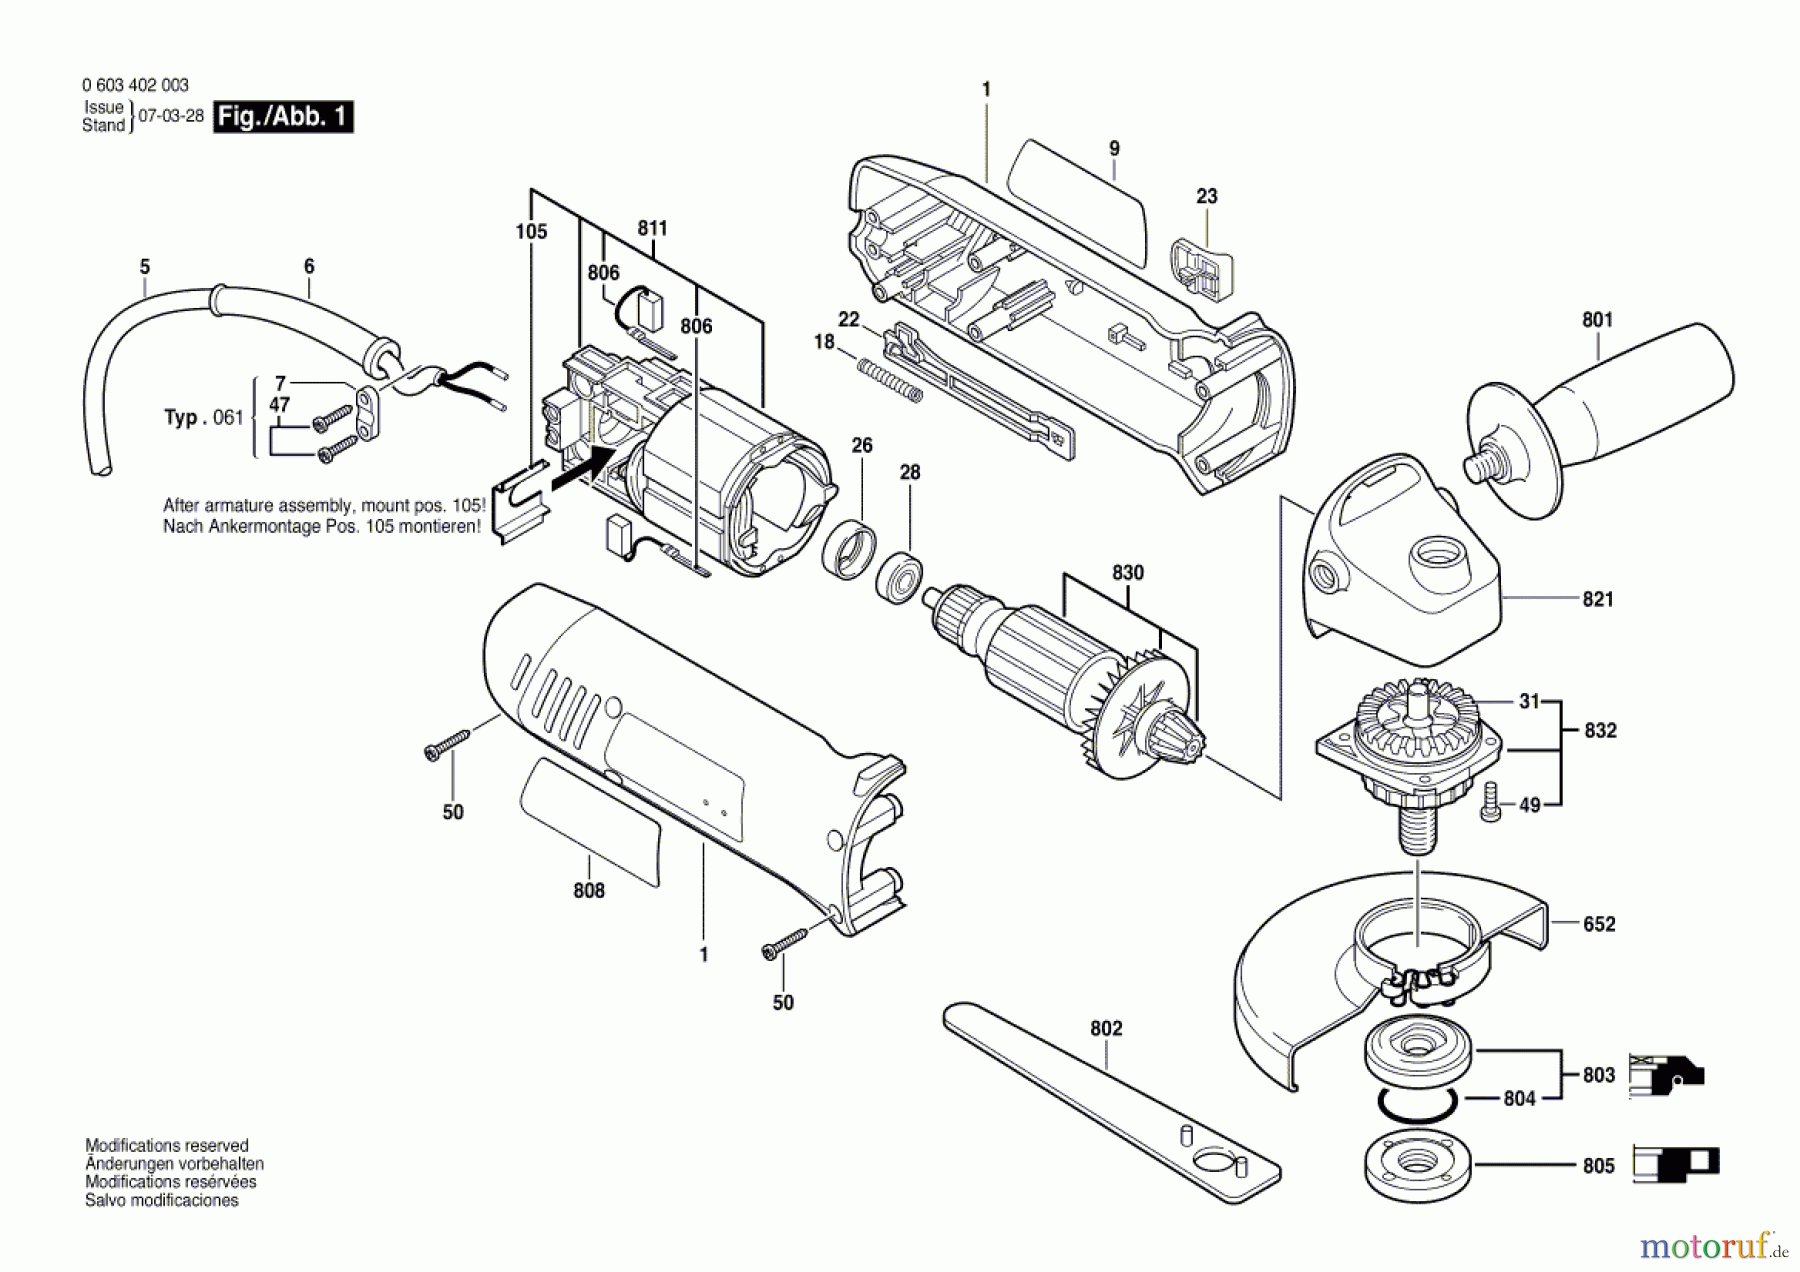  Bosch Werkzeug Winkelschleifer PWS 700 Seite 1